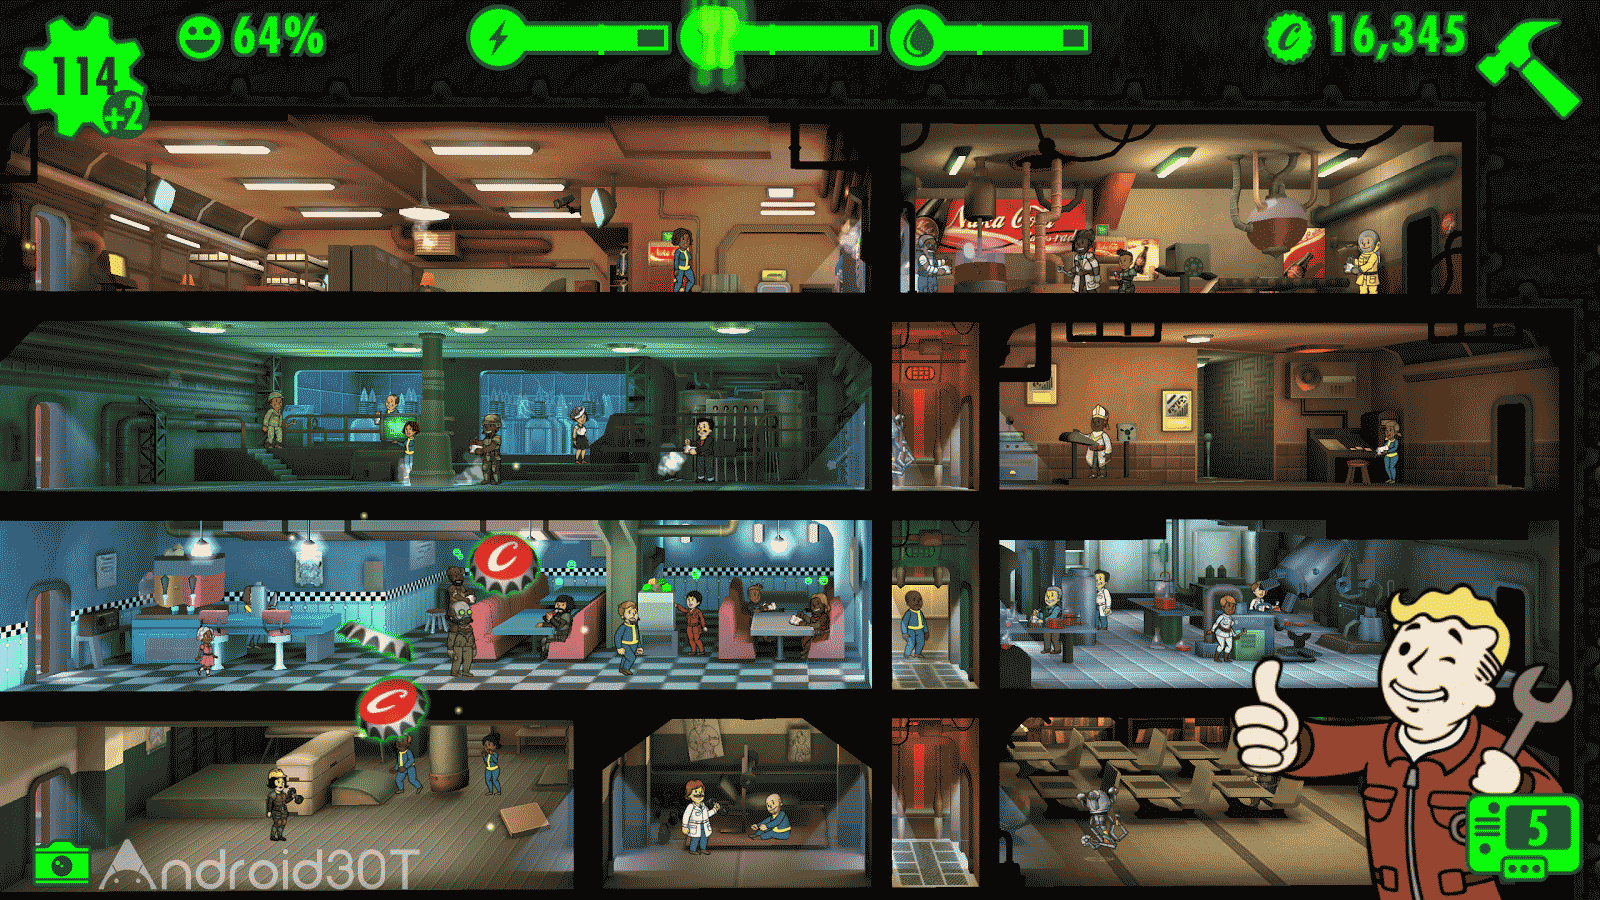 دانلود Fallout Shelter 1.14.19 – بازی فالوت شلتر اندروید